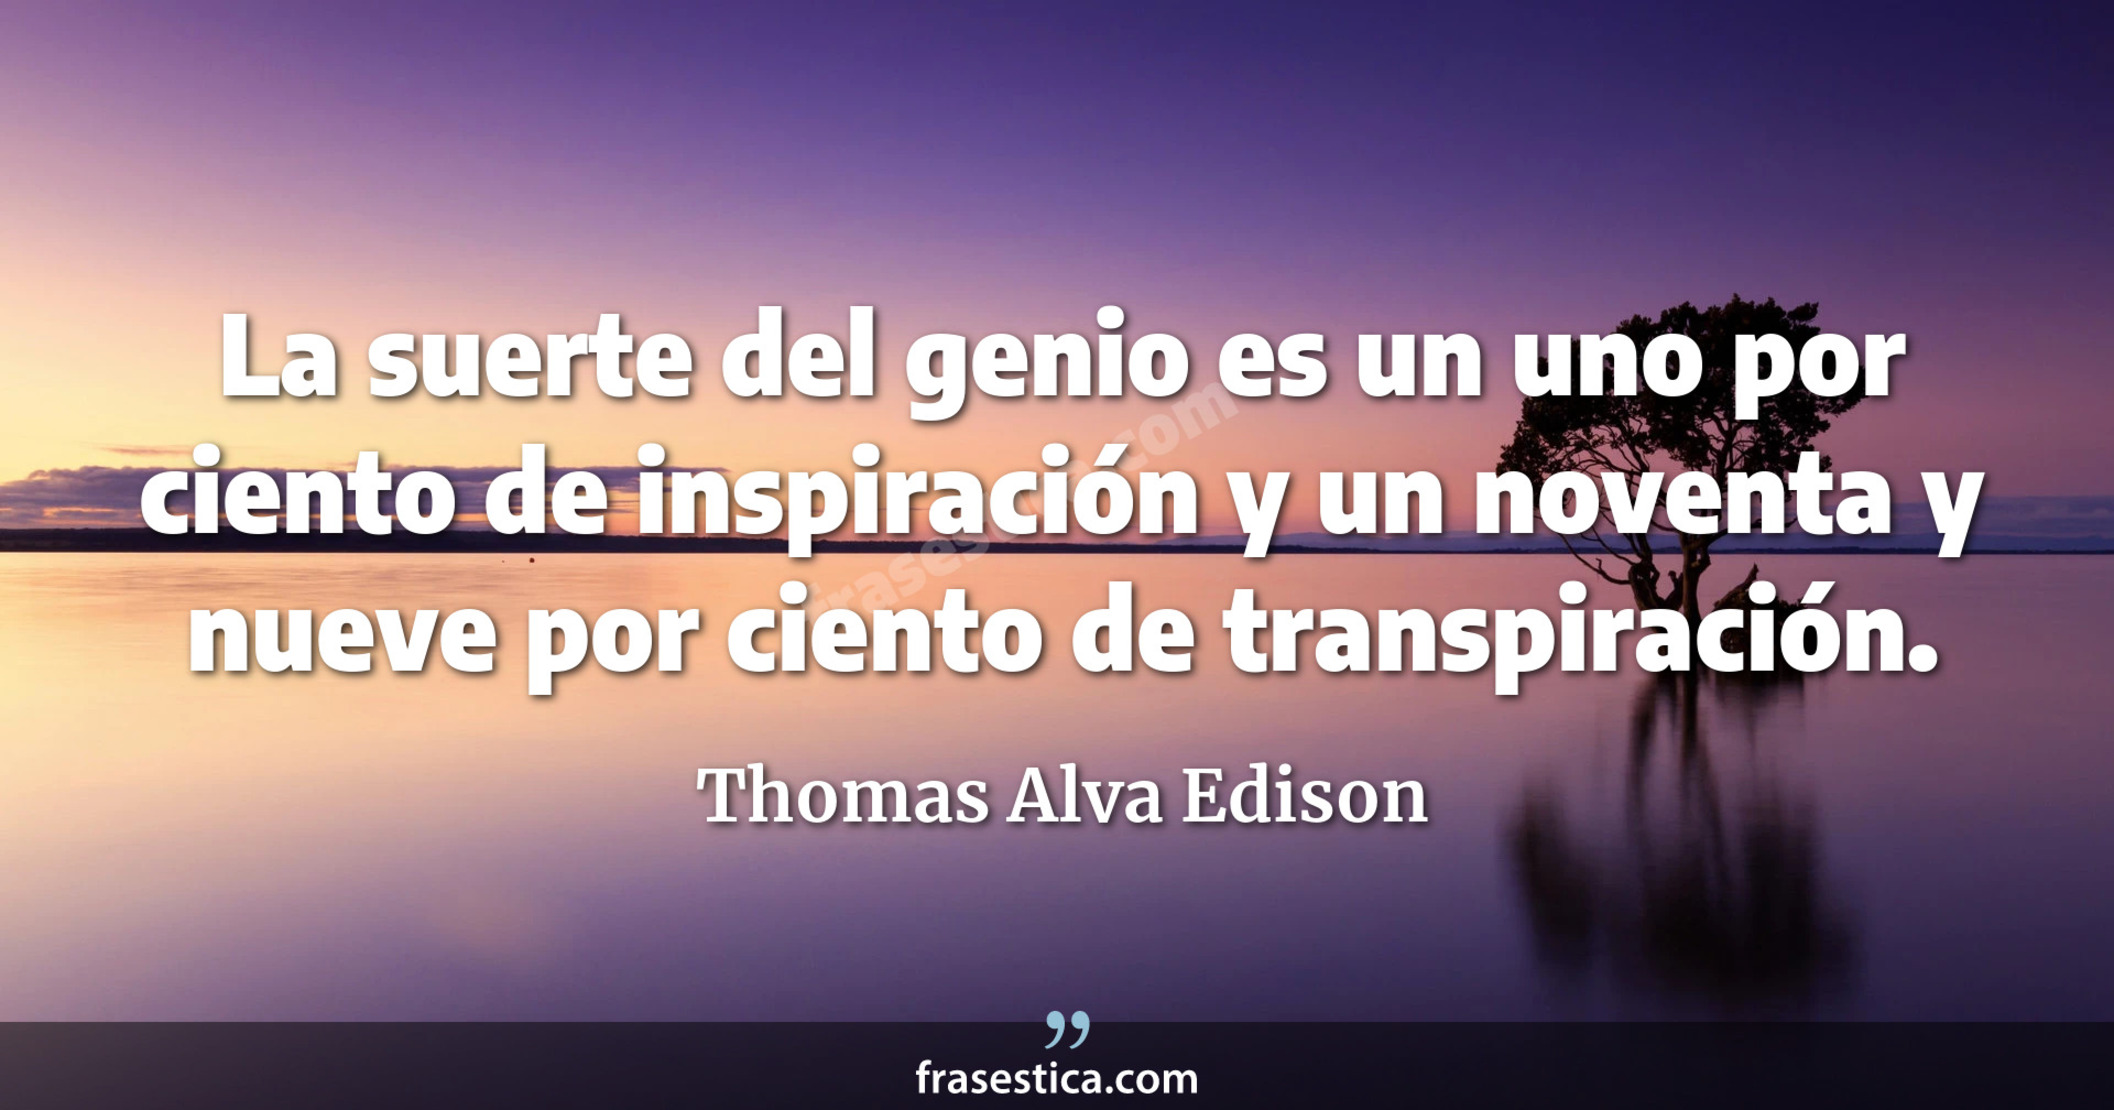 La suerte del genio es un uno por ciento de inspiración y un noventa y nueve por ciento de transpiración. - Thomas Alva Edison